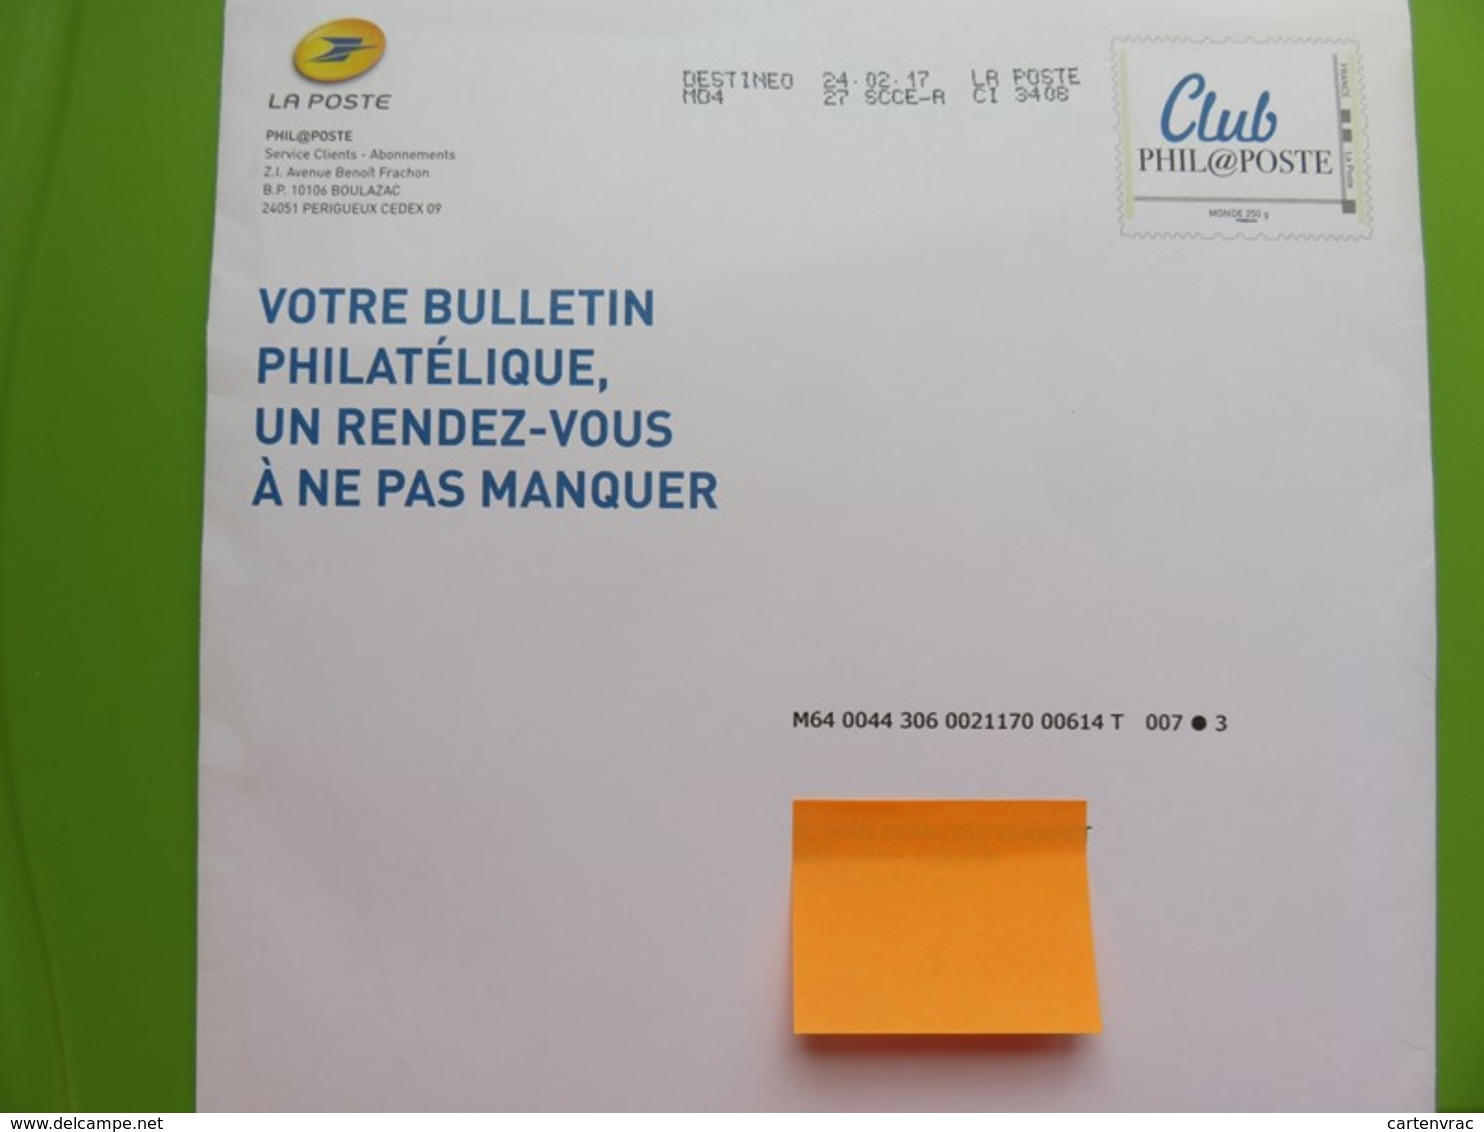 PAP - Entier Postal - Club Phil@poste - Philaposte - Monde 250 G - Destinéo - 24.02.17 - Prêts-à-poster: TSC Et Repiquages Semi-officiels